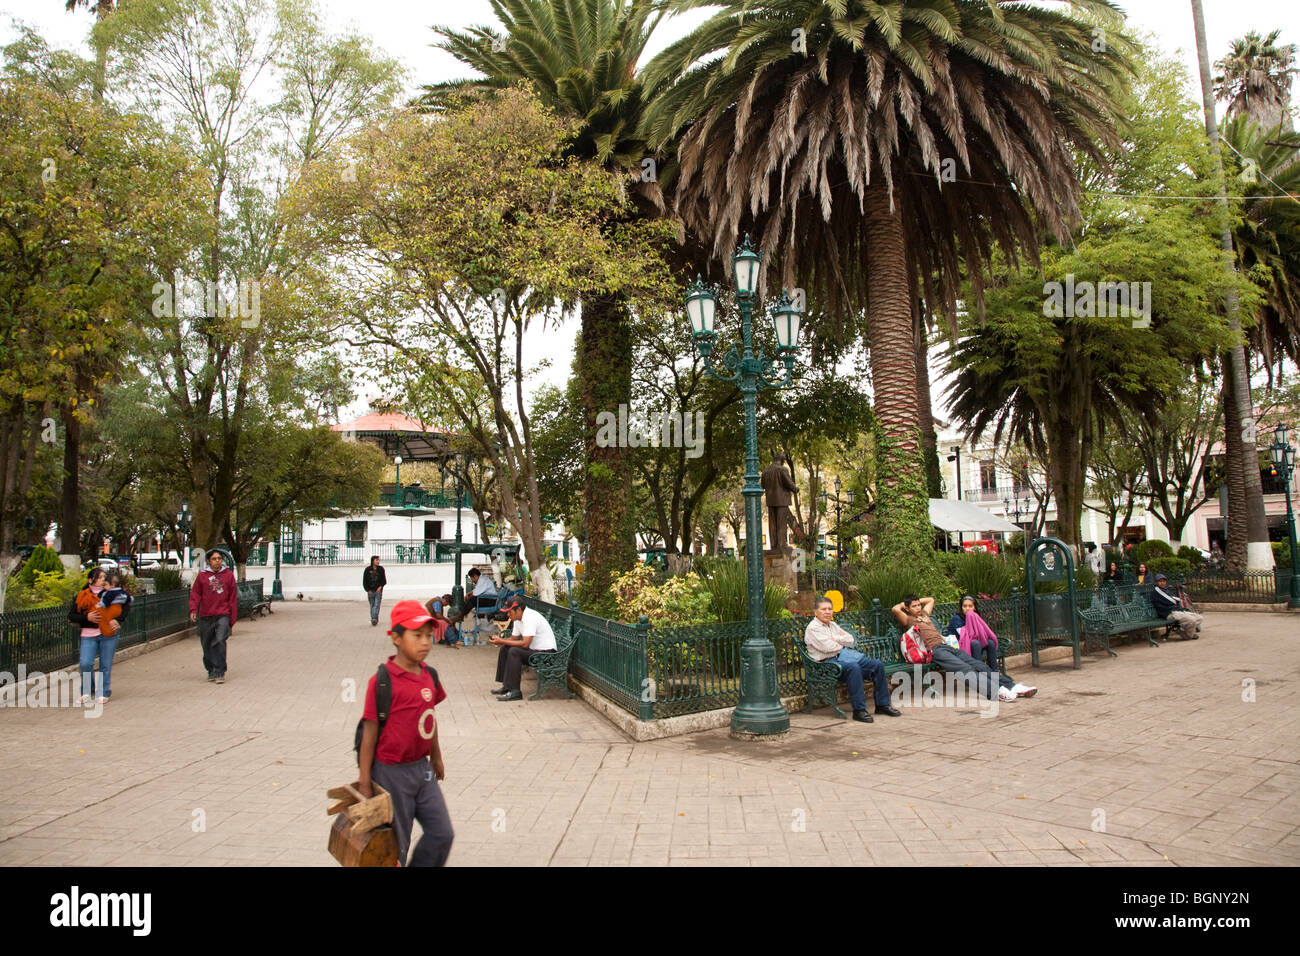 Zócalo, Plaza 31 de Marzo. San Cristóbal de las Casas, Chiapas Mexico. Stock Photo